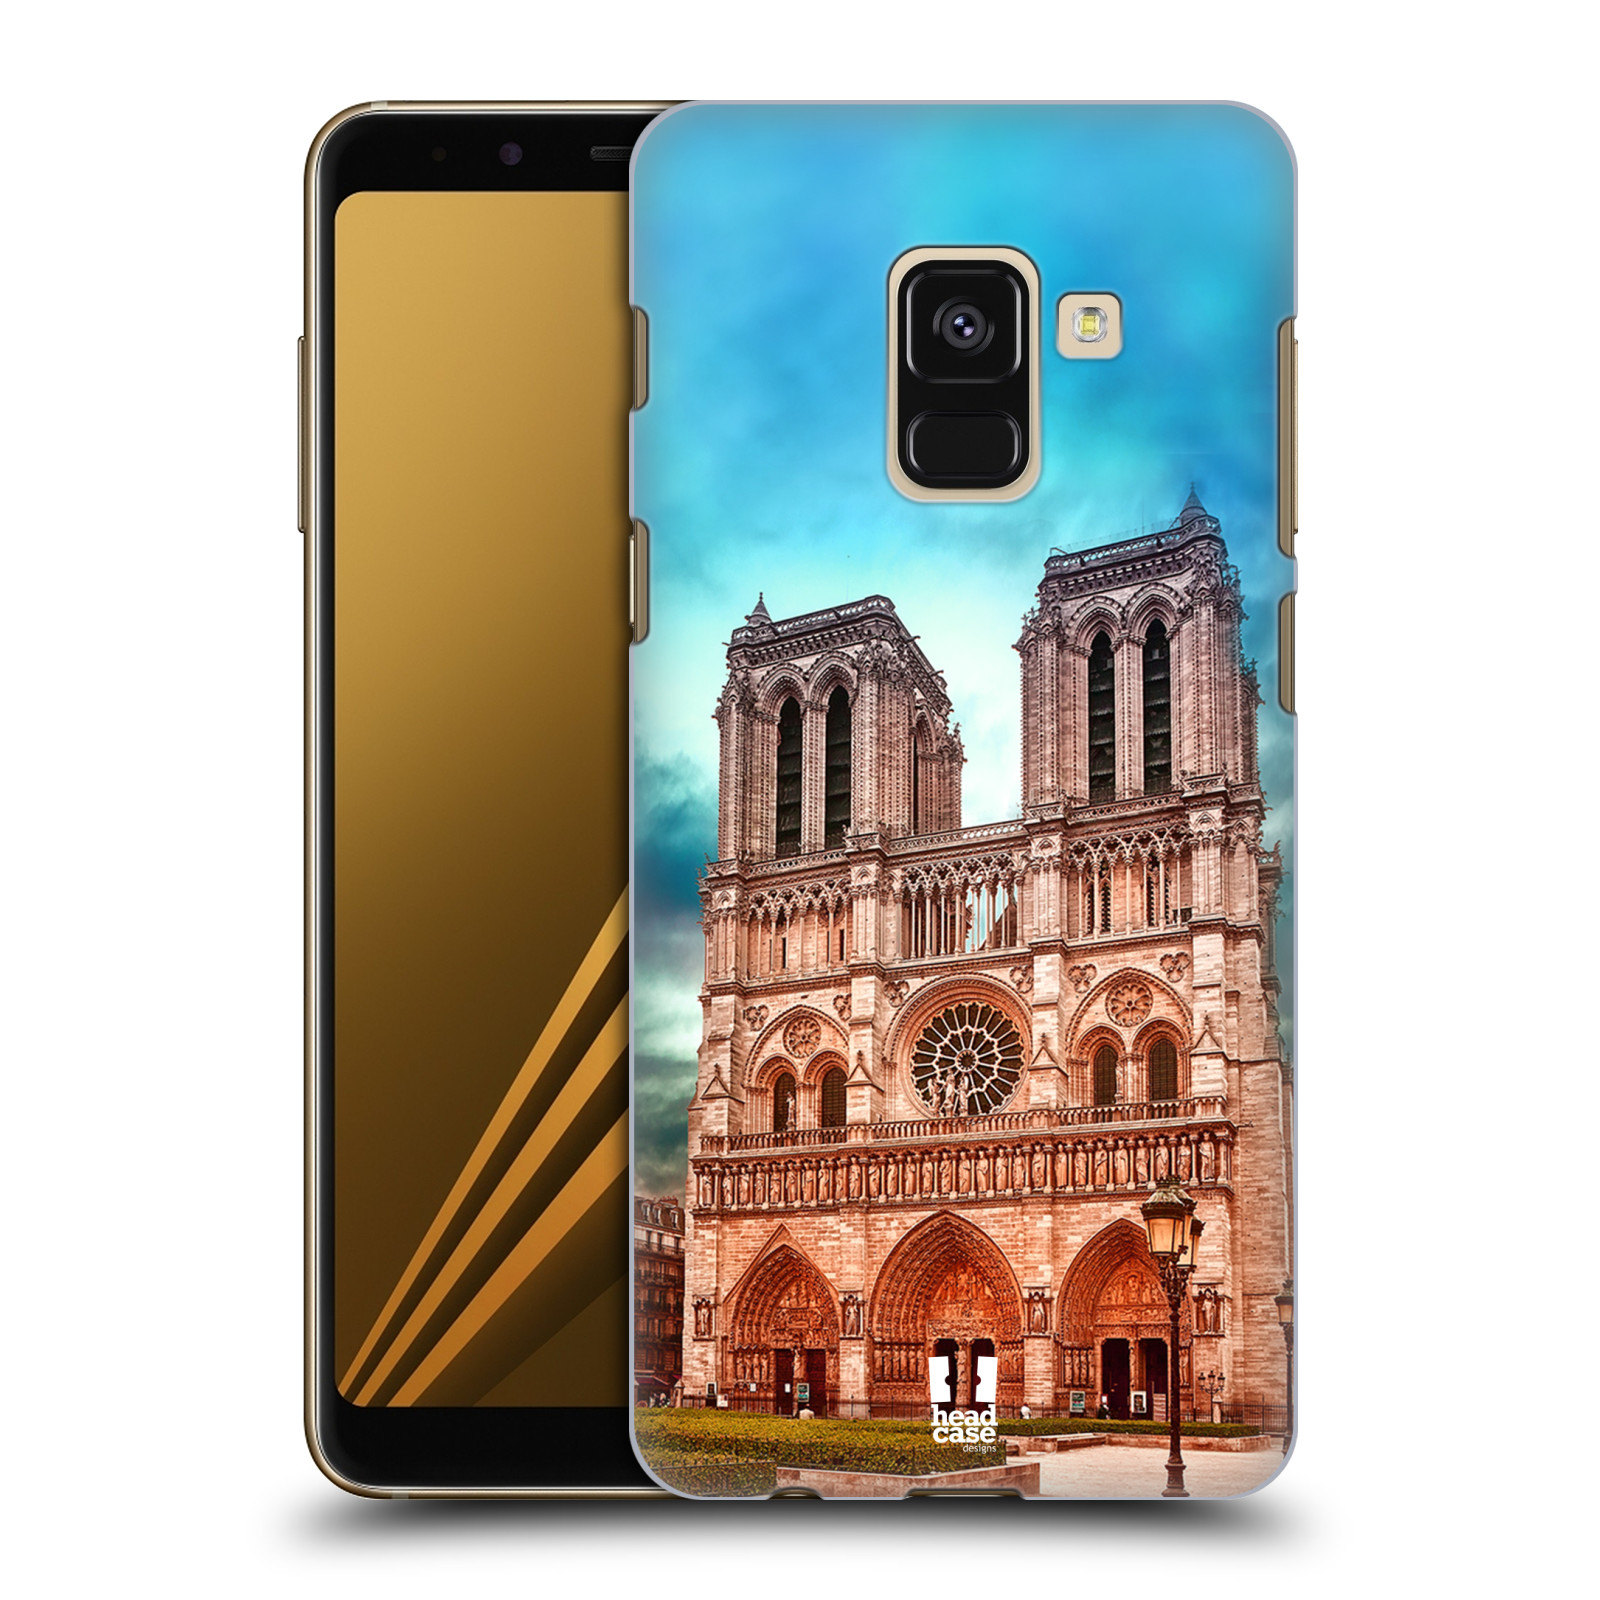 Pouzdro na mobil Samsung Galaxy A8+ 2018, A8 PLUS 2018 - HEAD CASE - historická místa katedrála Notre Dame